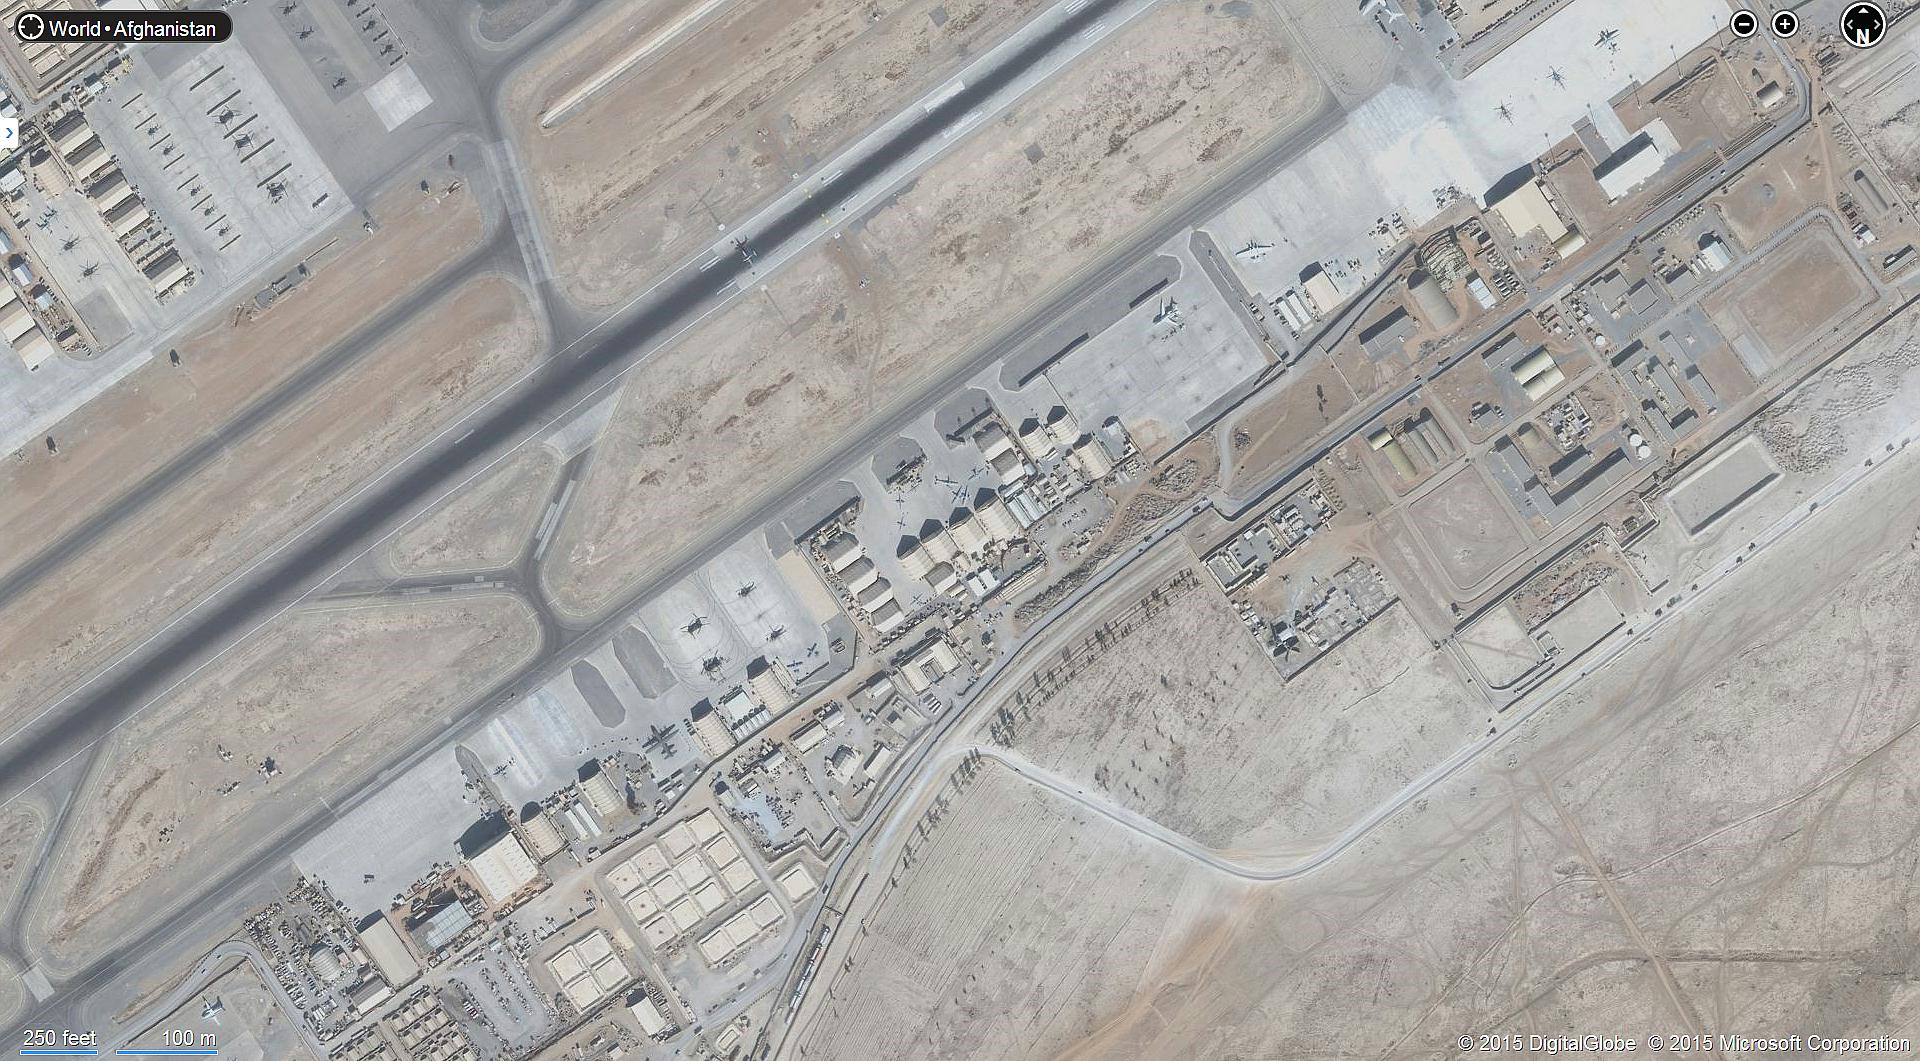 kandahar air base map